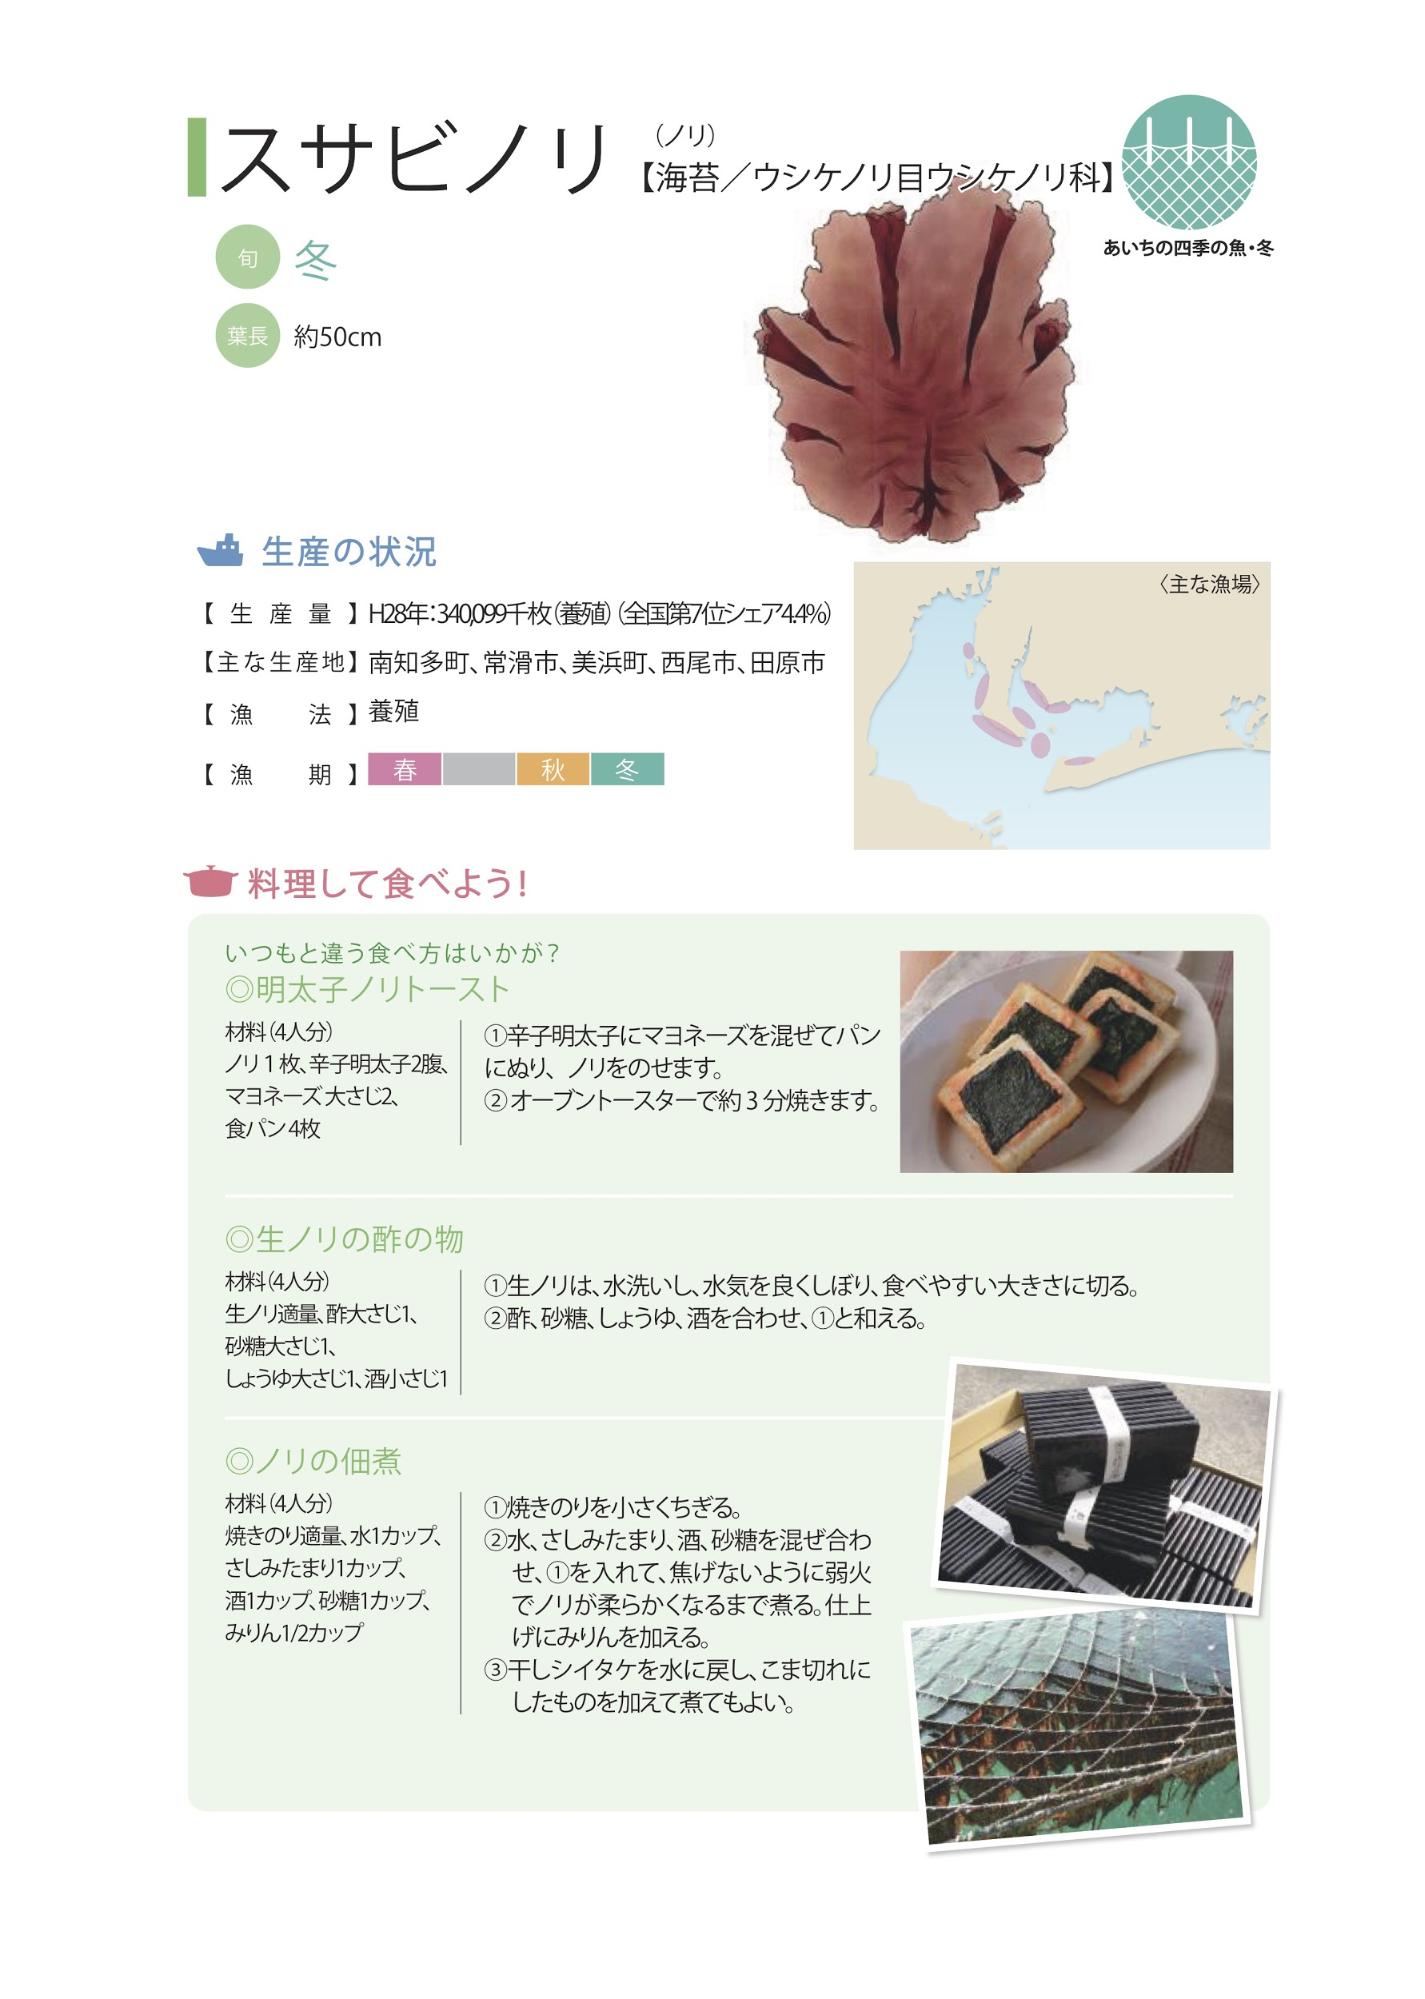 さかな屋のお嫁さん家 2月の食卓 あいちの四季の魚 ノリ 愛知県西尾市 石原海苔店２代目の人気出張シェフseiya の魅力に迫る